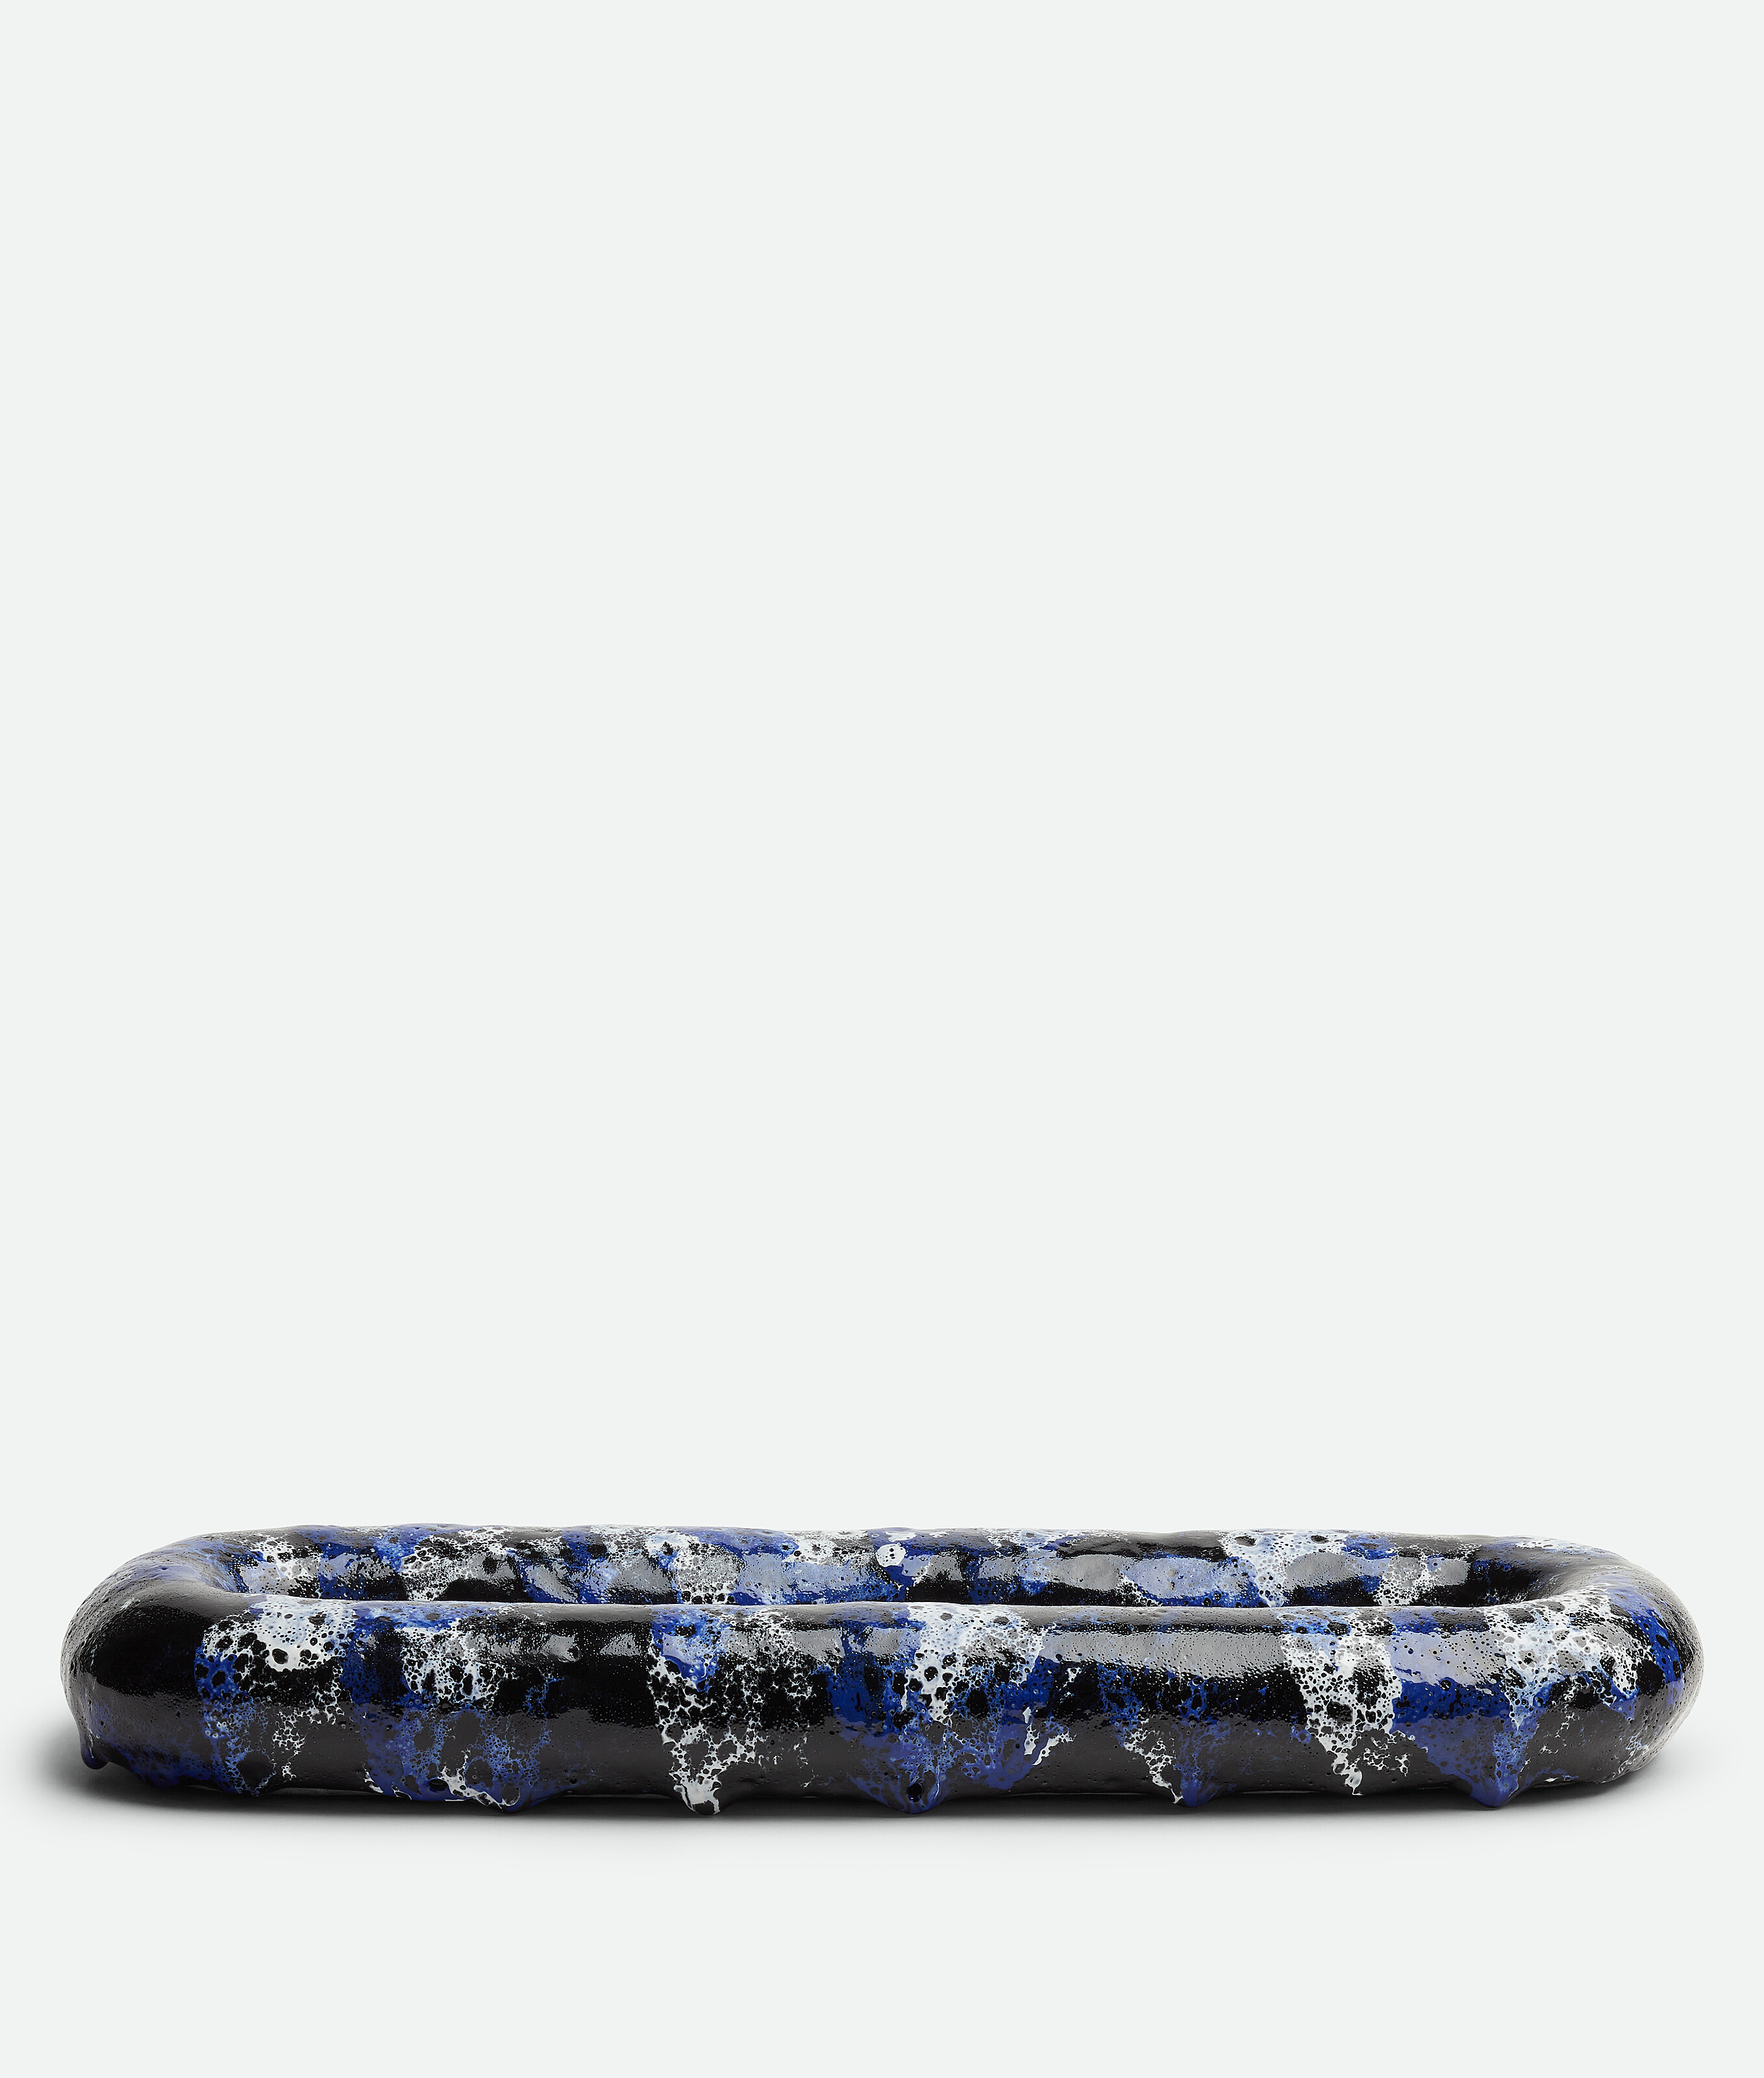 Bottega Veneta Ovales Tablett Mit Vulkanischer Glasur In Blue